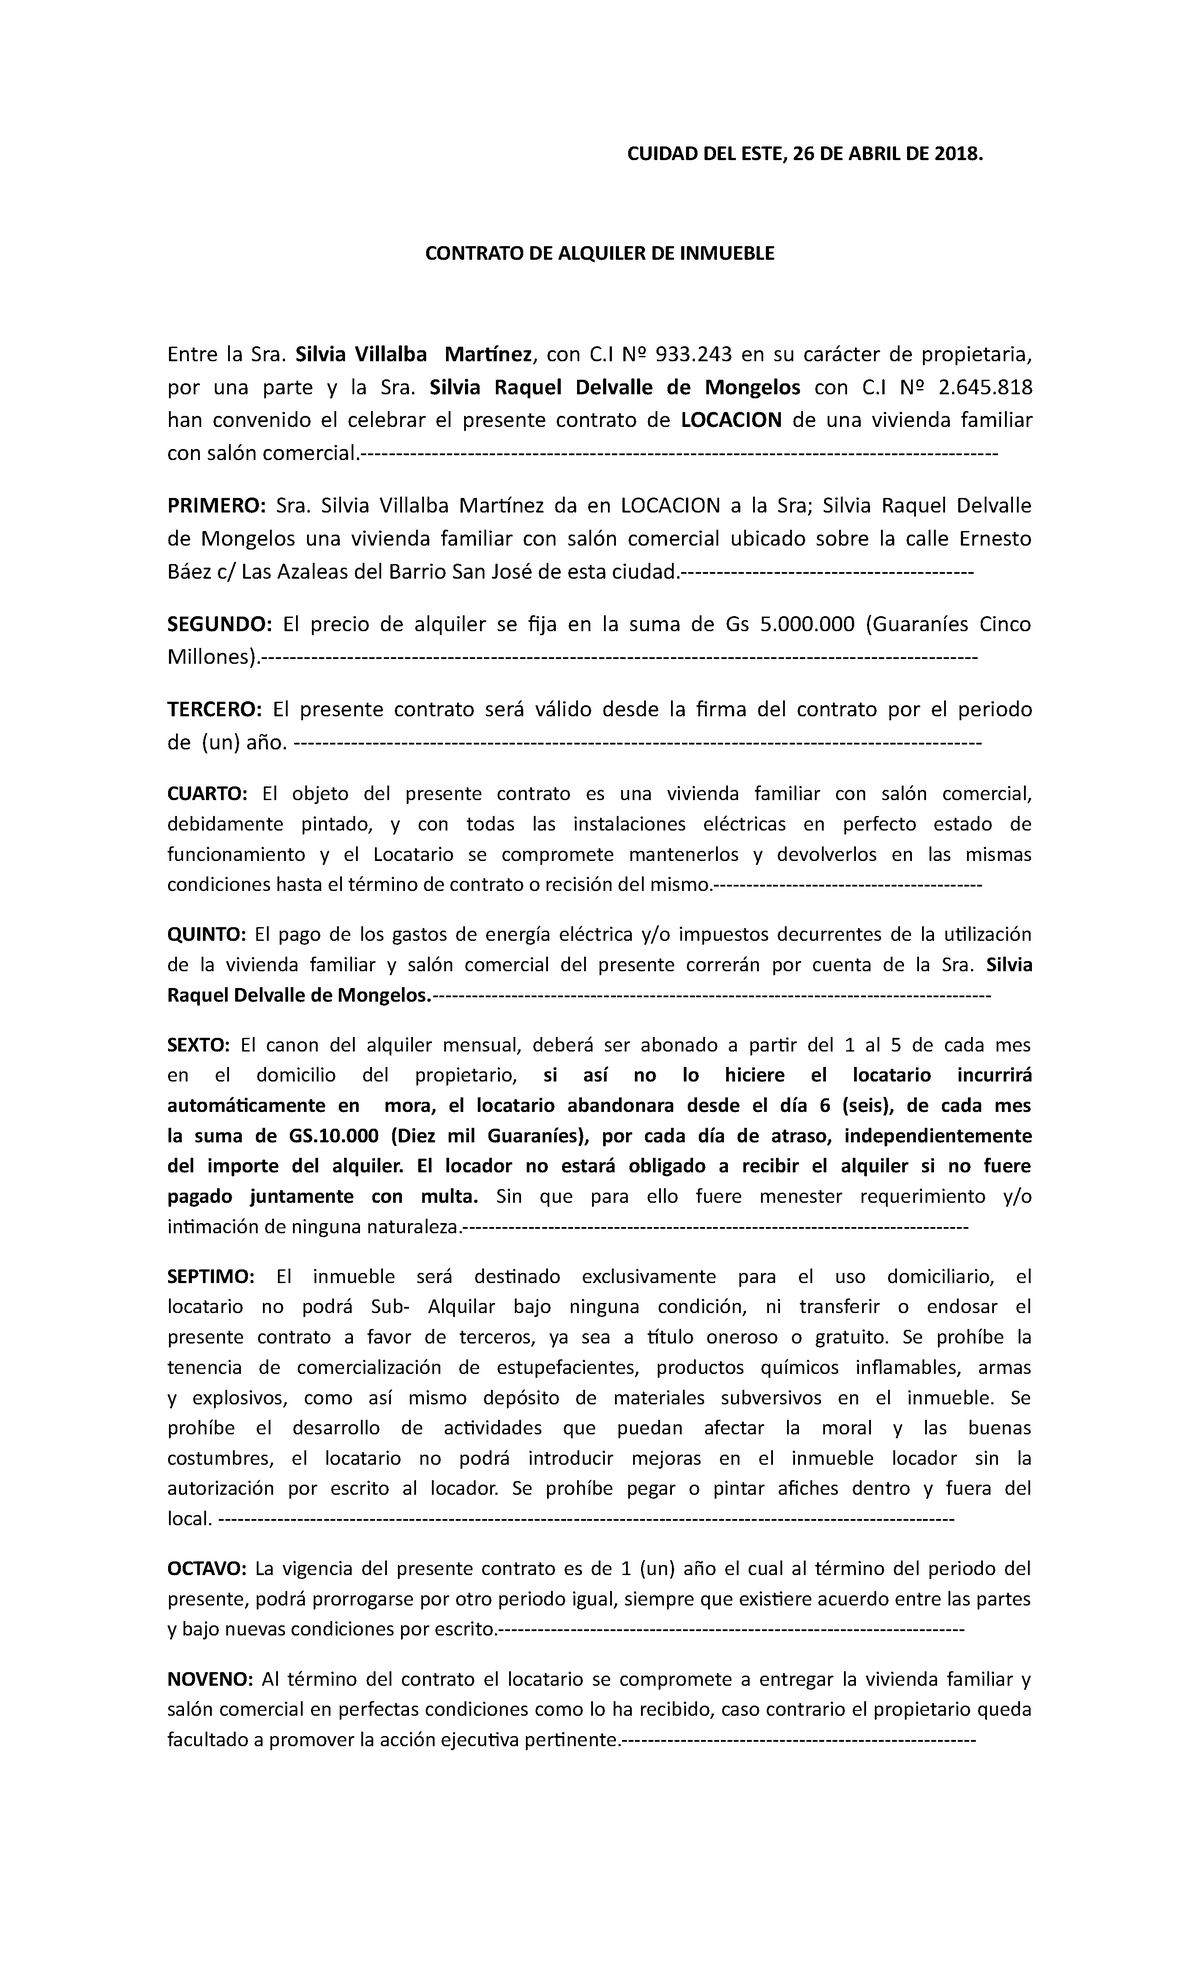 Modelo para contrato de alquiler de inmueble - CUIDAD DEL ESTE, 26 DE ABRIL  DE 2018. CONTRATO DE - Studocu